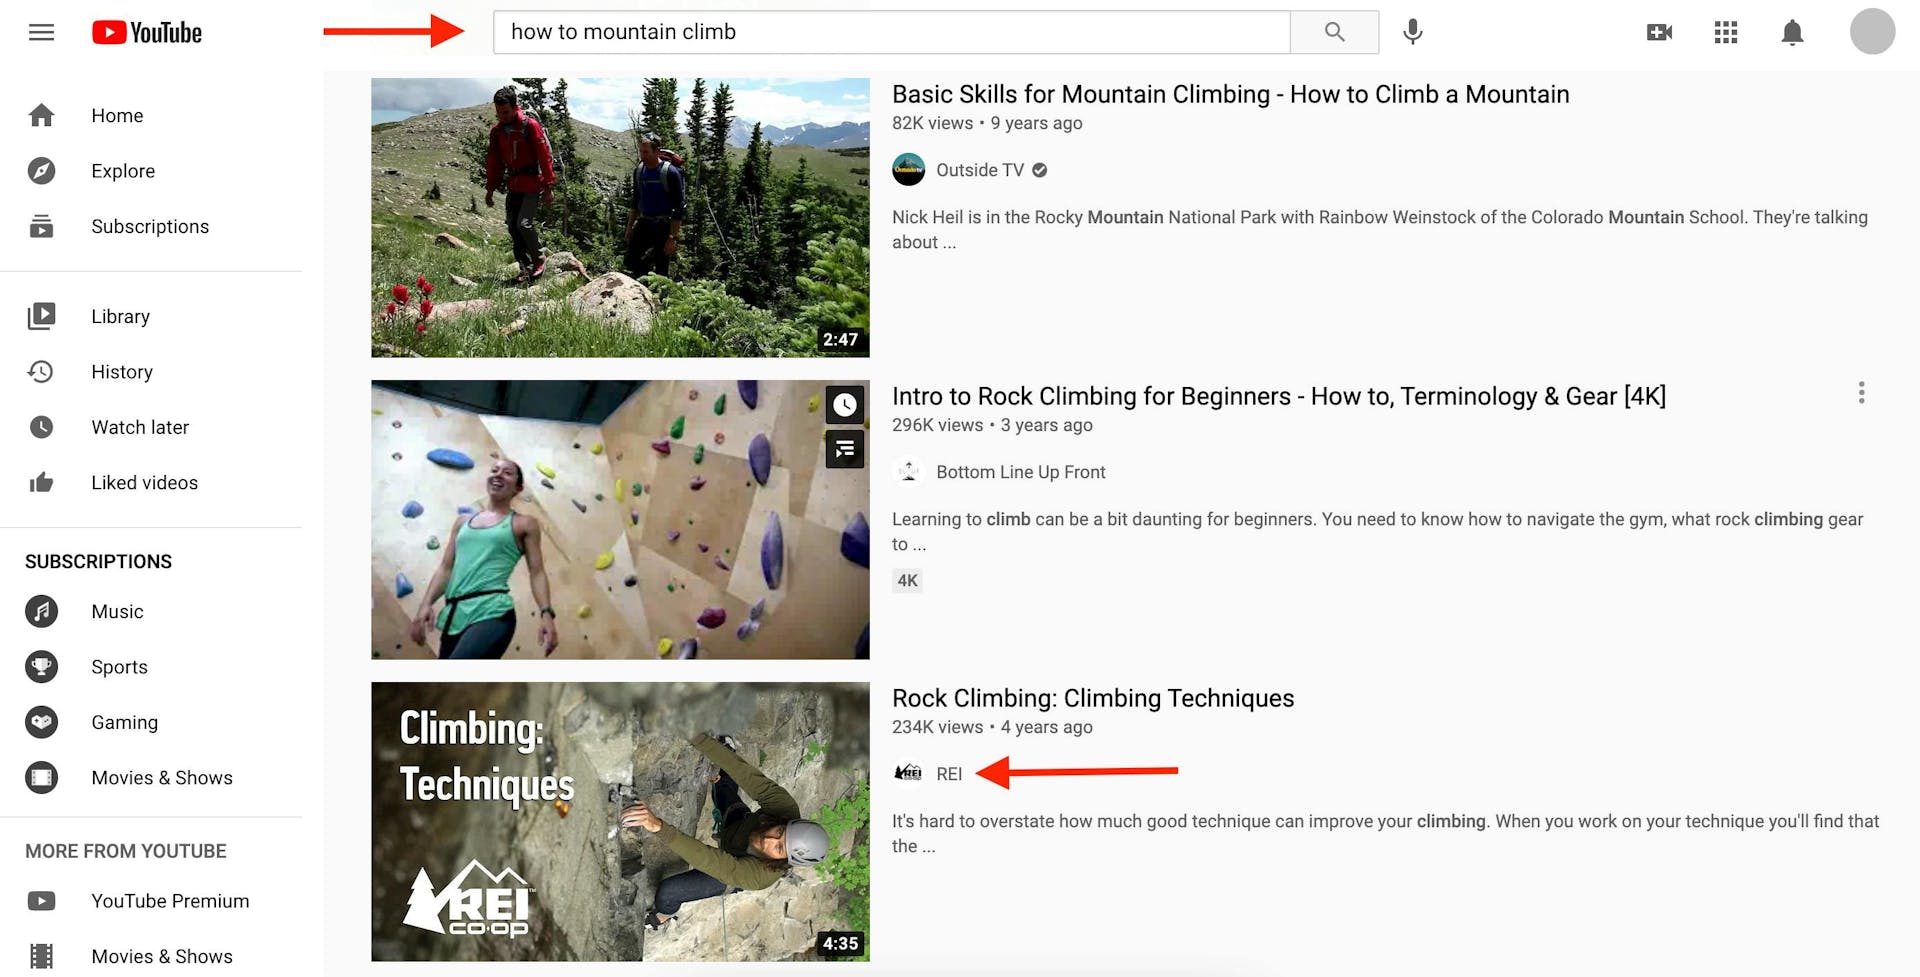 Résultats de recherche pour la requête YouTube "How to mountain climb" 